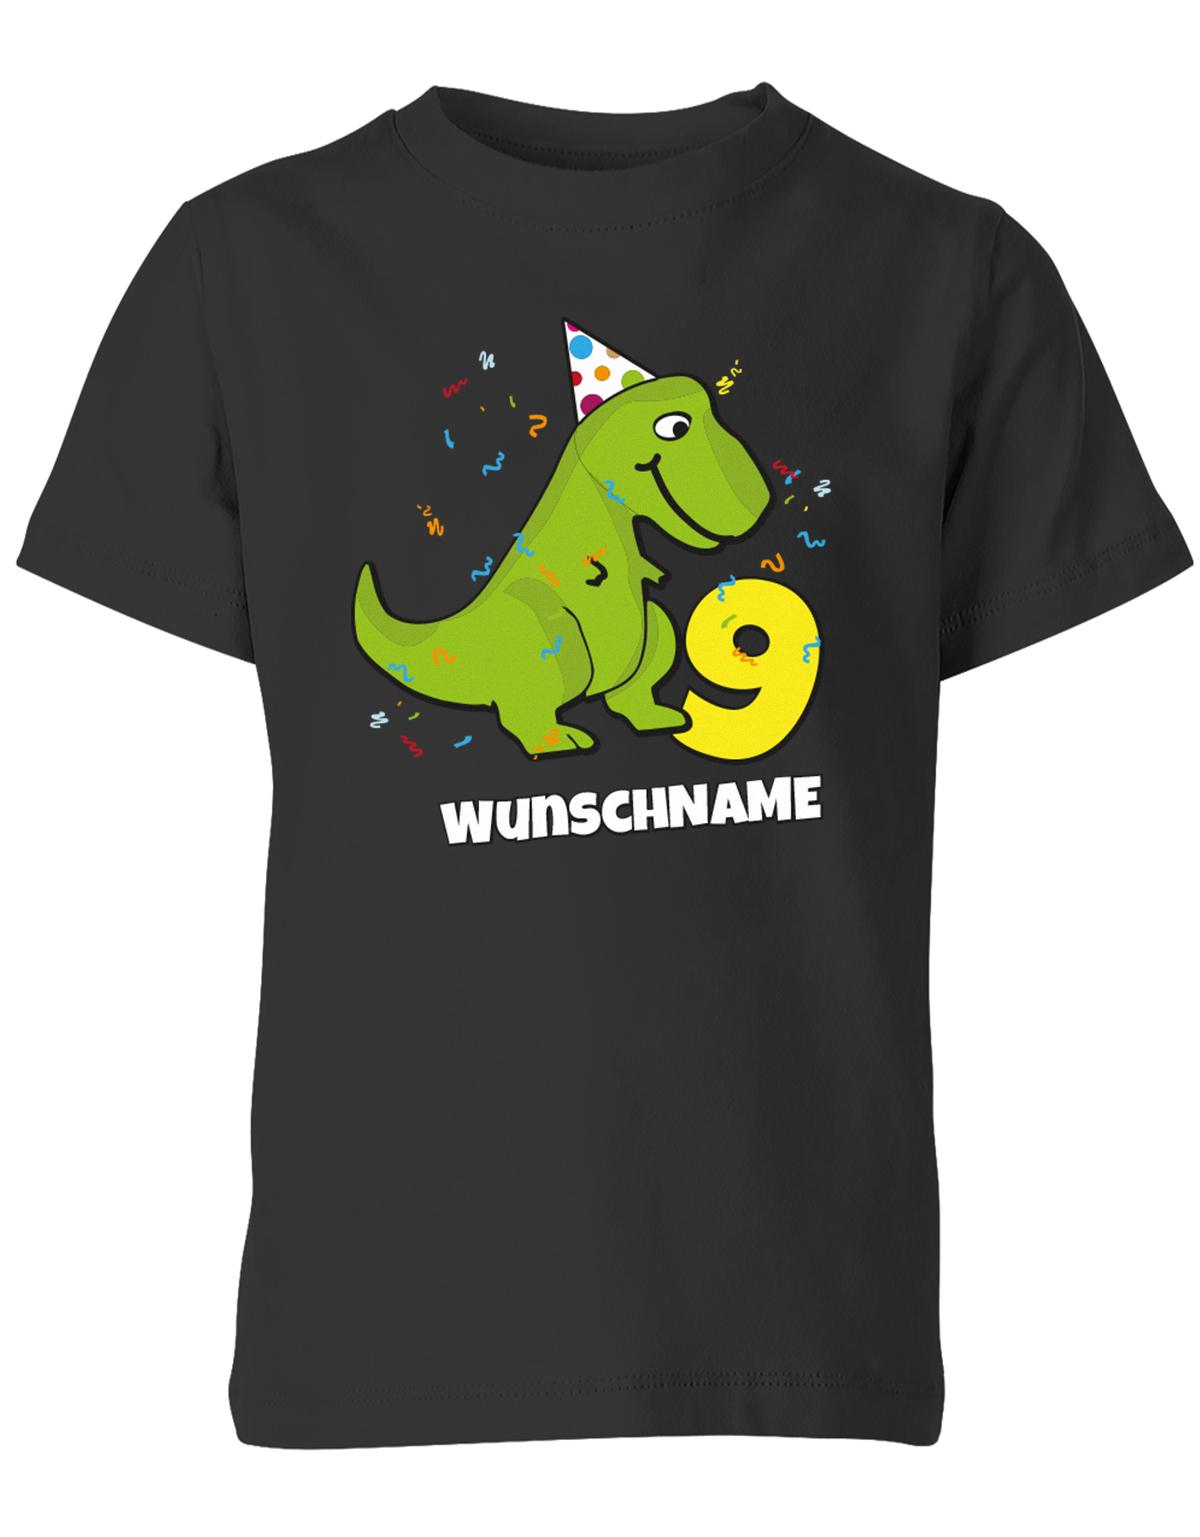 ich-bin-9-Dinosaurier-t-rex-wunschname-geburtstag-kinder-shirt-schwarz